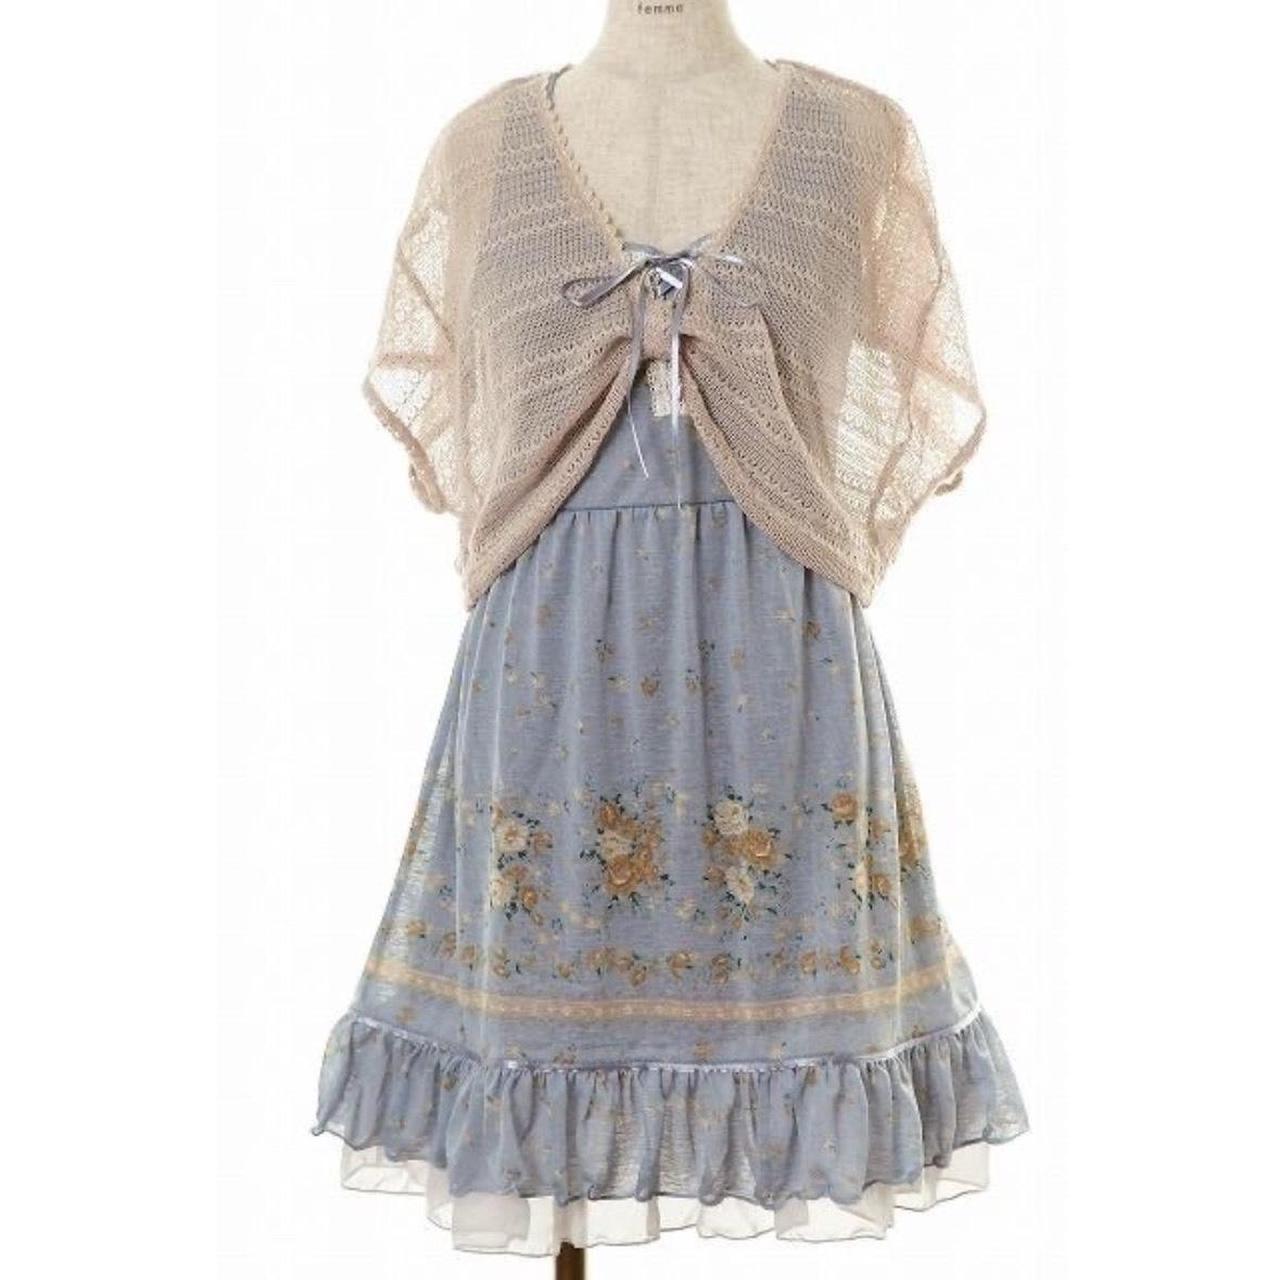 Axes Femme Blue Floral Dress :) i love the ruffles,... - Depop